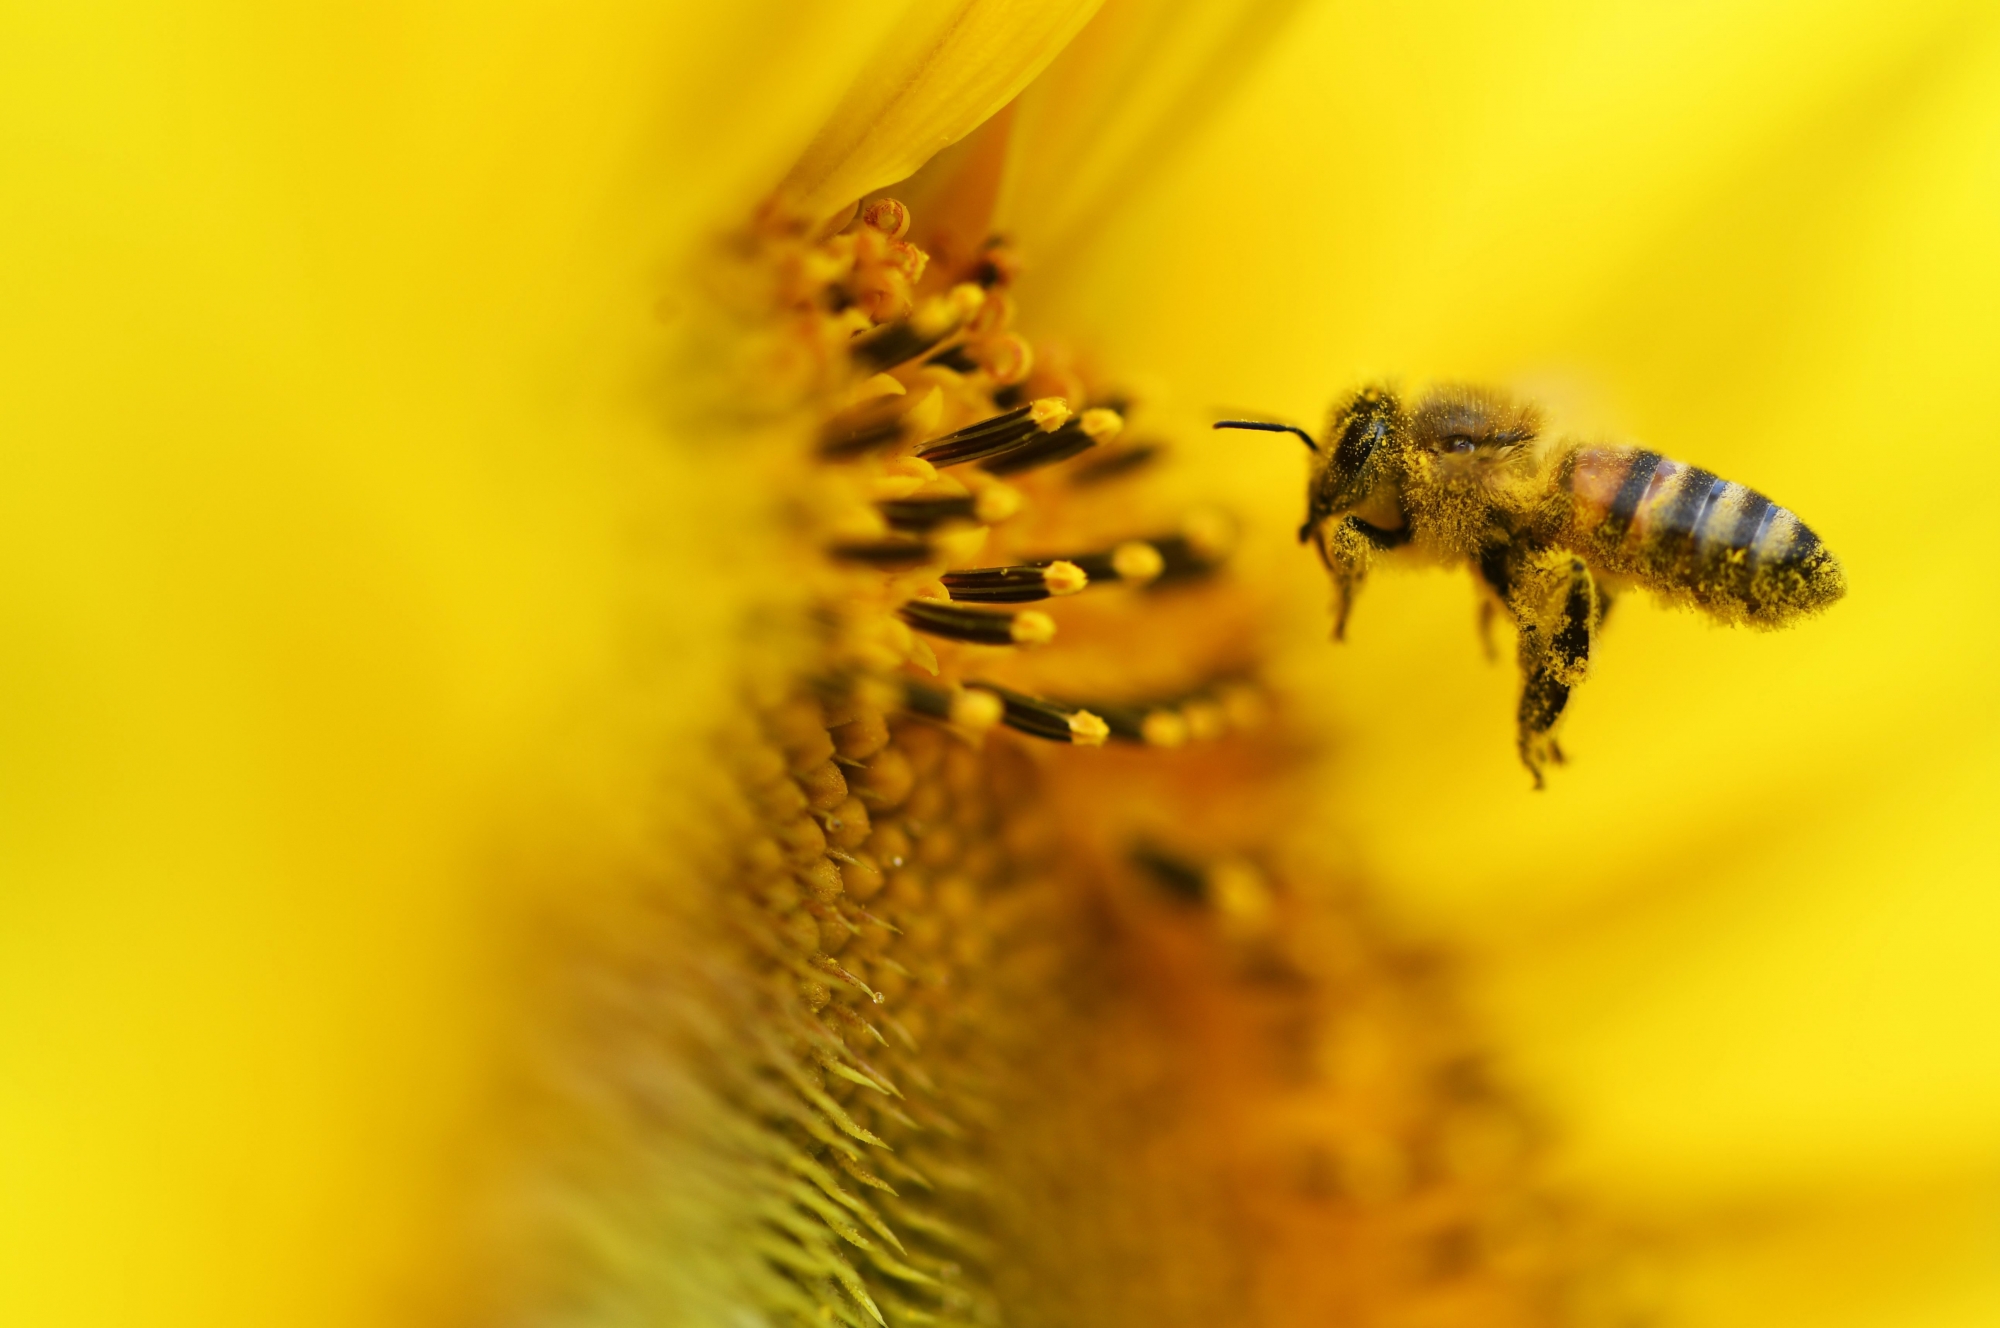 En Valais, 80% de la pollinisation des cultures de fruits et de baies est effectué par les abeilles. Les députés ont conscience de cette importance.